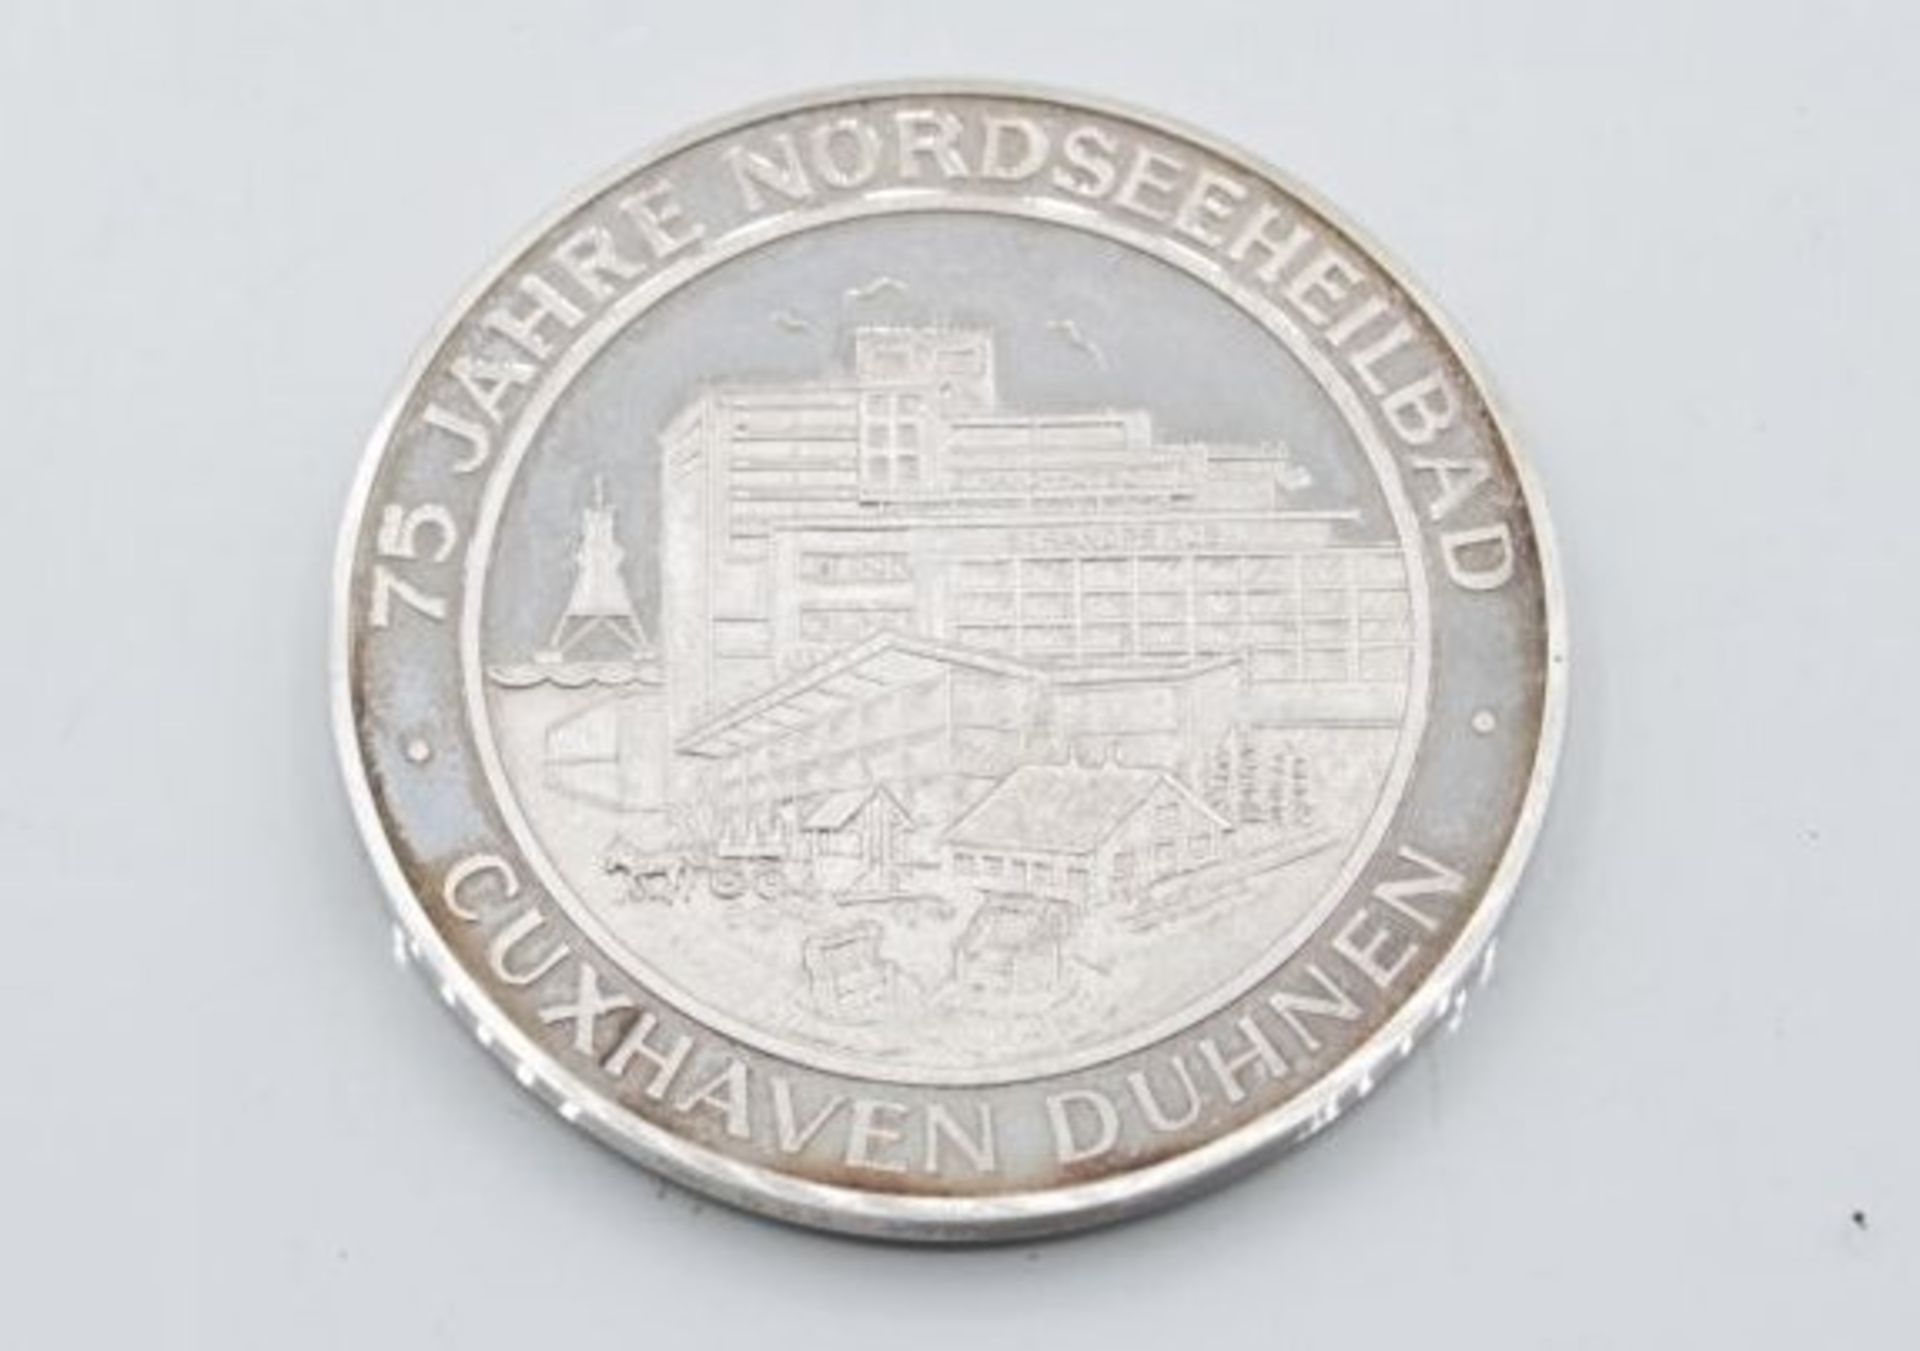 gr. Medaille, 75 Jahre Duhner Wattrennen, Nordseebad Cuxhaven, Silber, 50,9gr., D-5cm. - Bild 2 aus 2